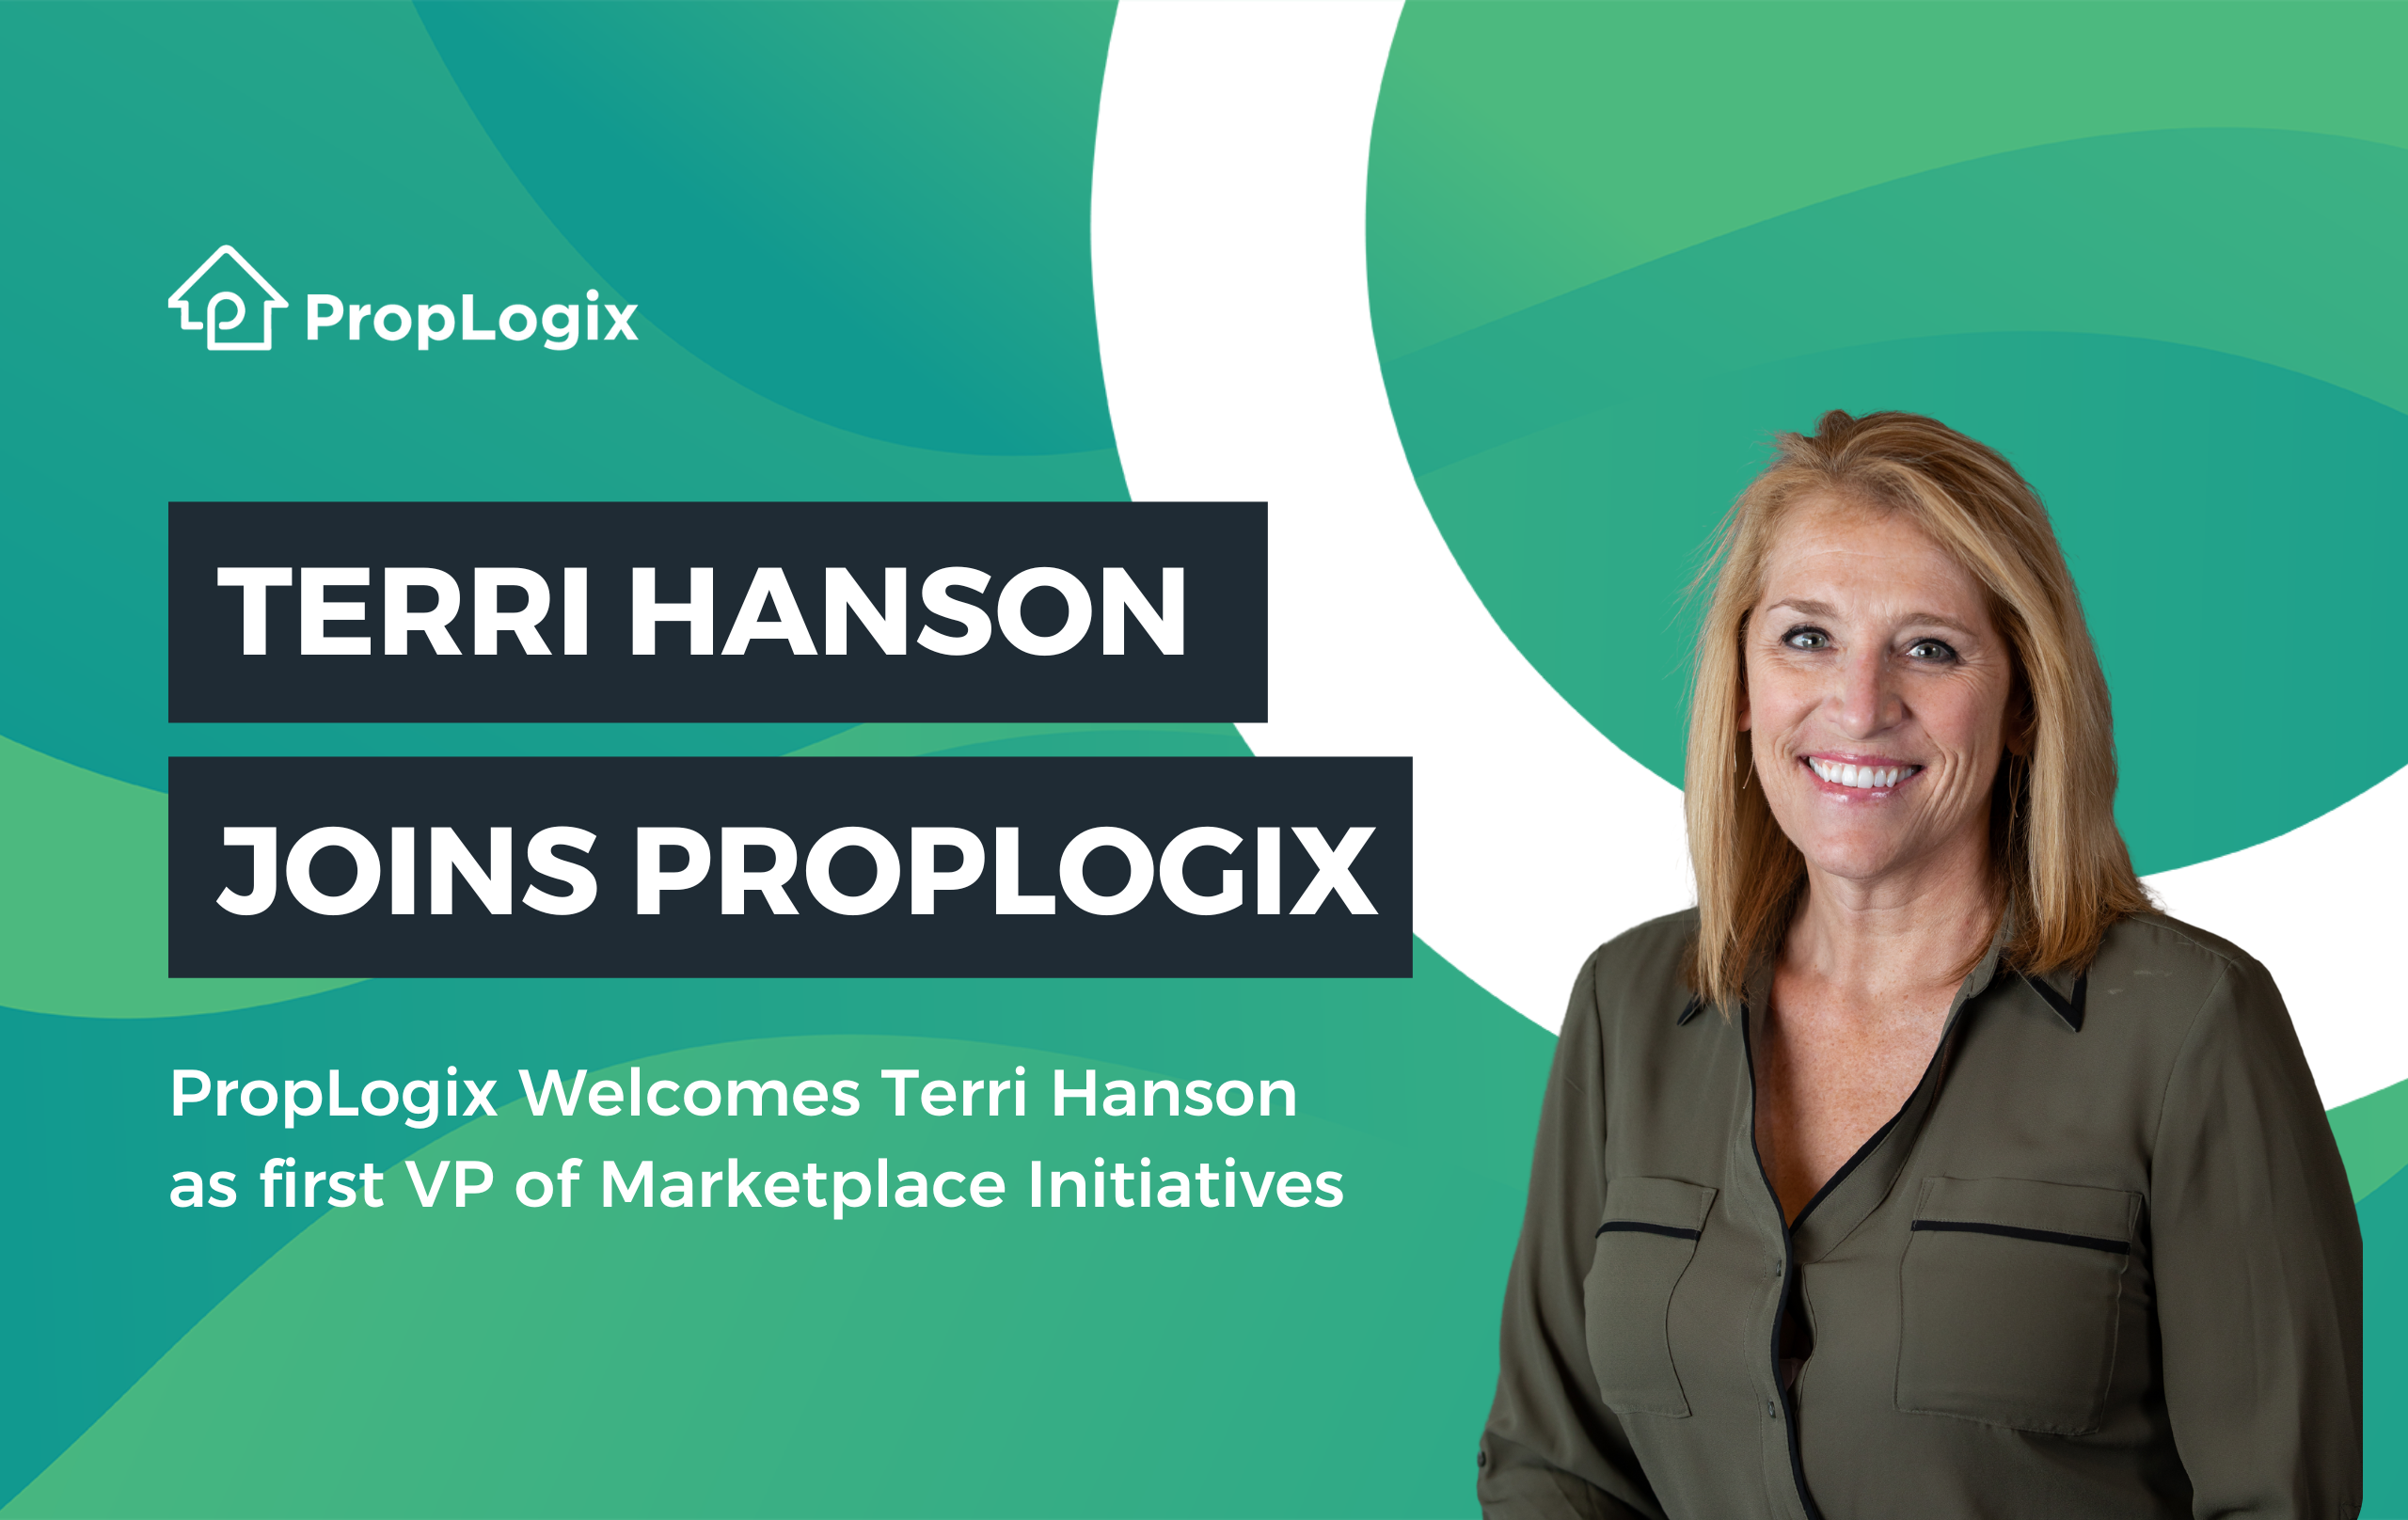 Terri Hanson Joins PropLogix